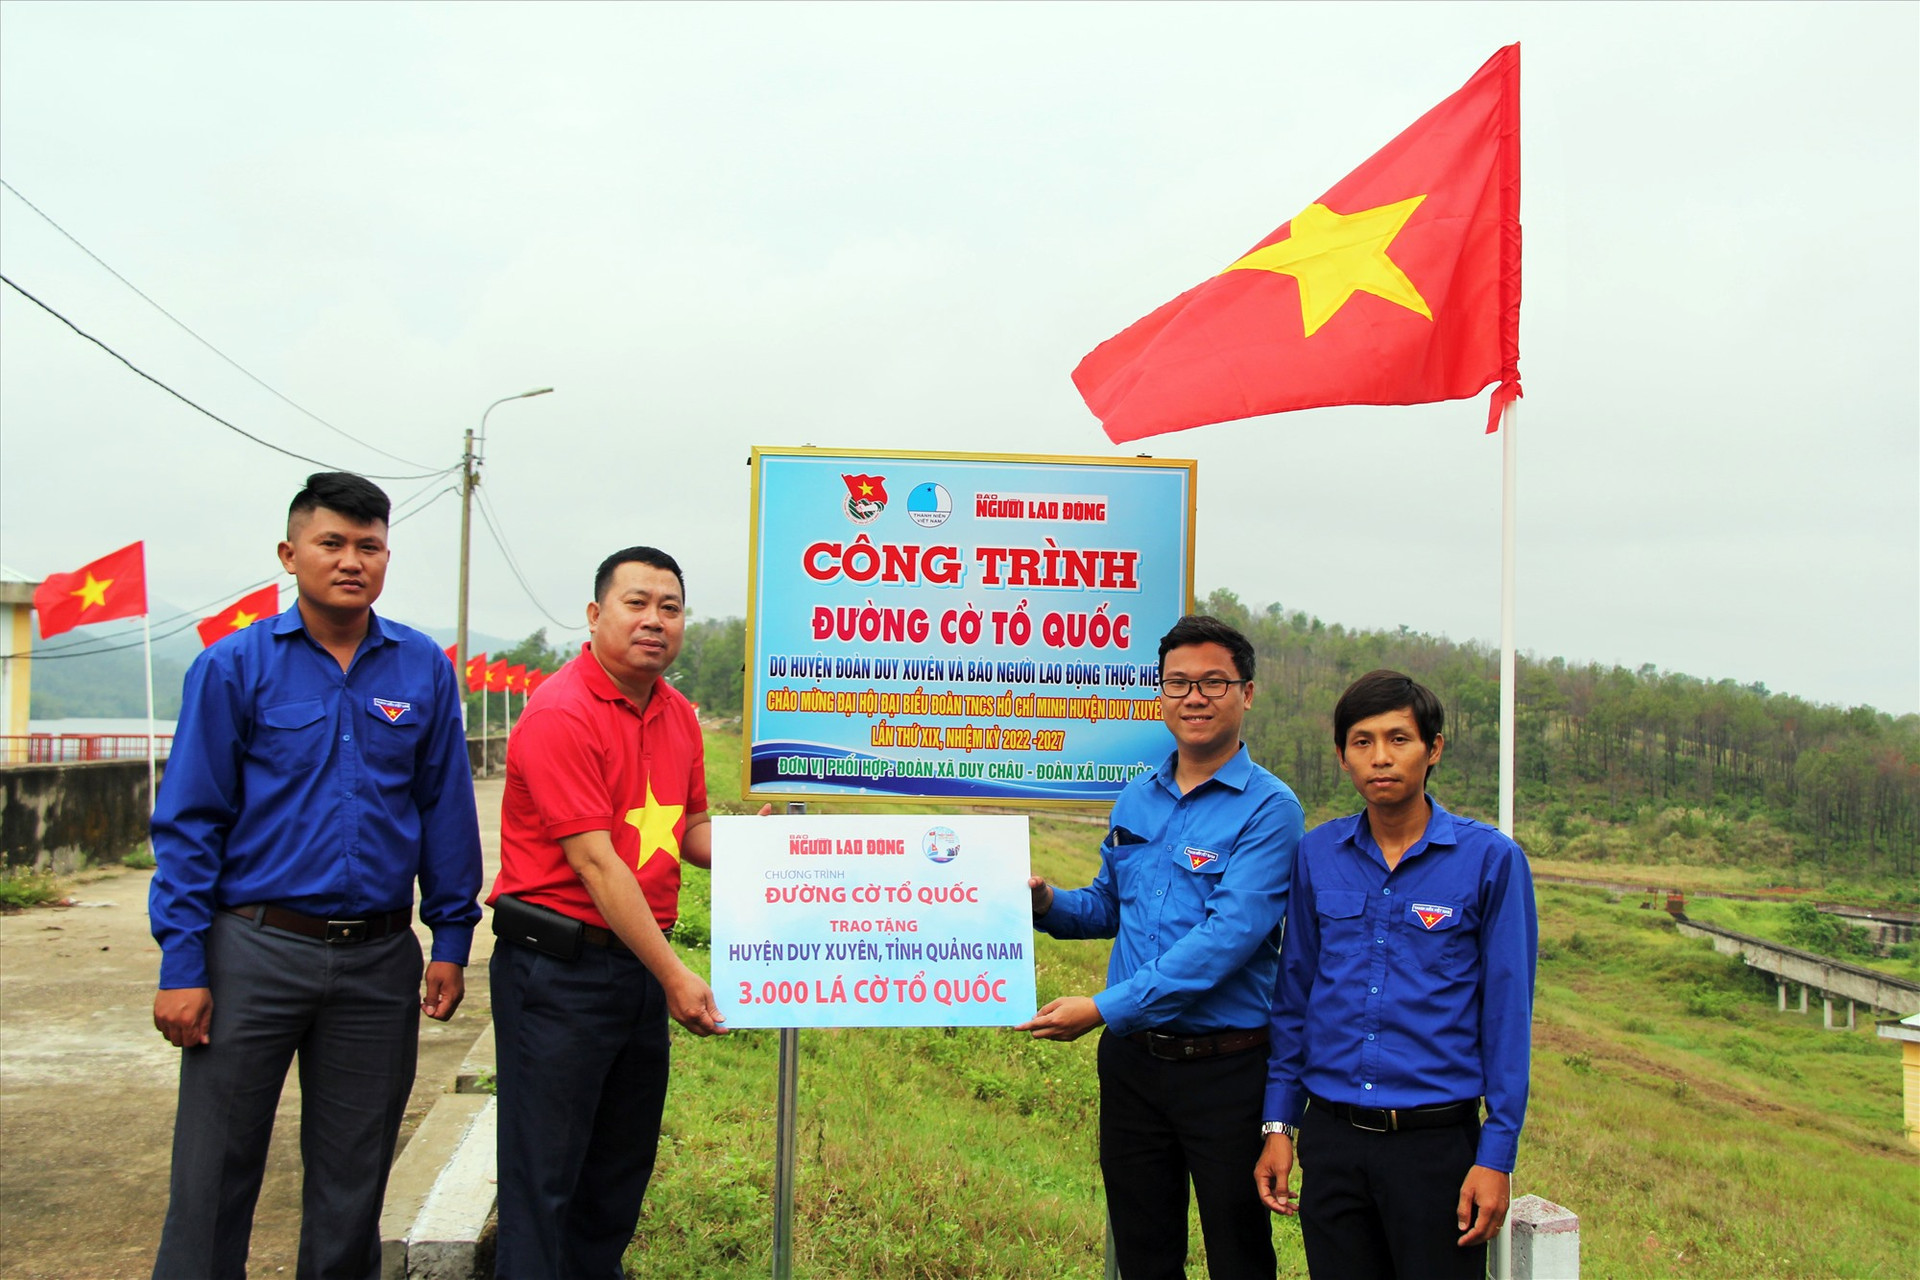 Tháng 5.2022, Báo Người Lao Động cũng đã trao tặng cho Huyện đoàn Duy Xuyên 3.000 lá cờ Tổ quốc để thực hiện 14 “Đường cờ Tổ quốc” trên địa bàn huyện.